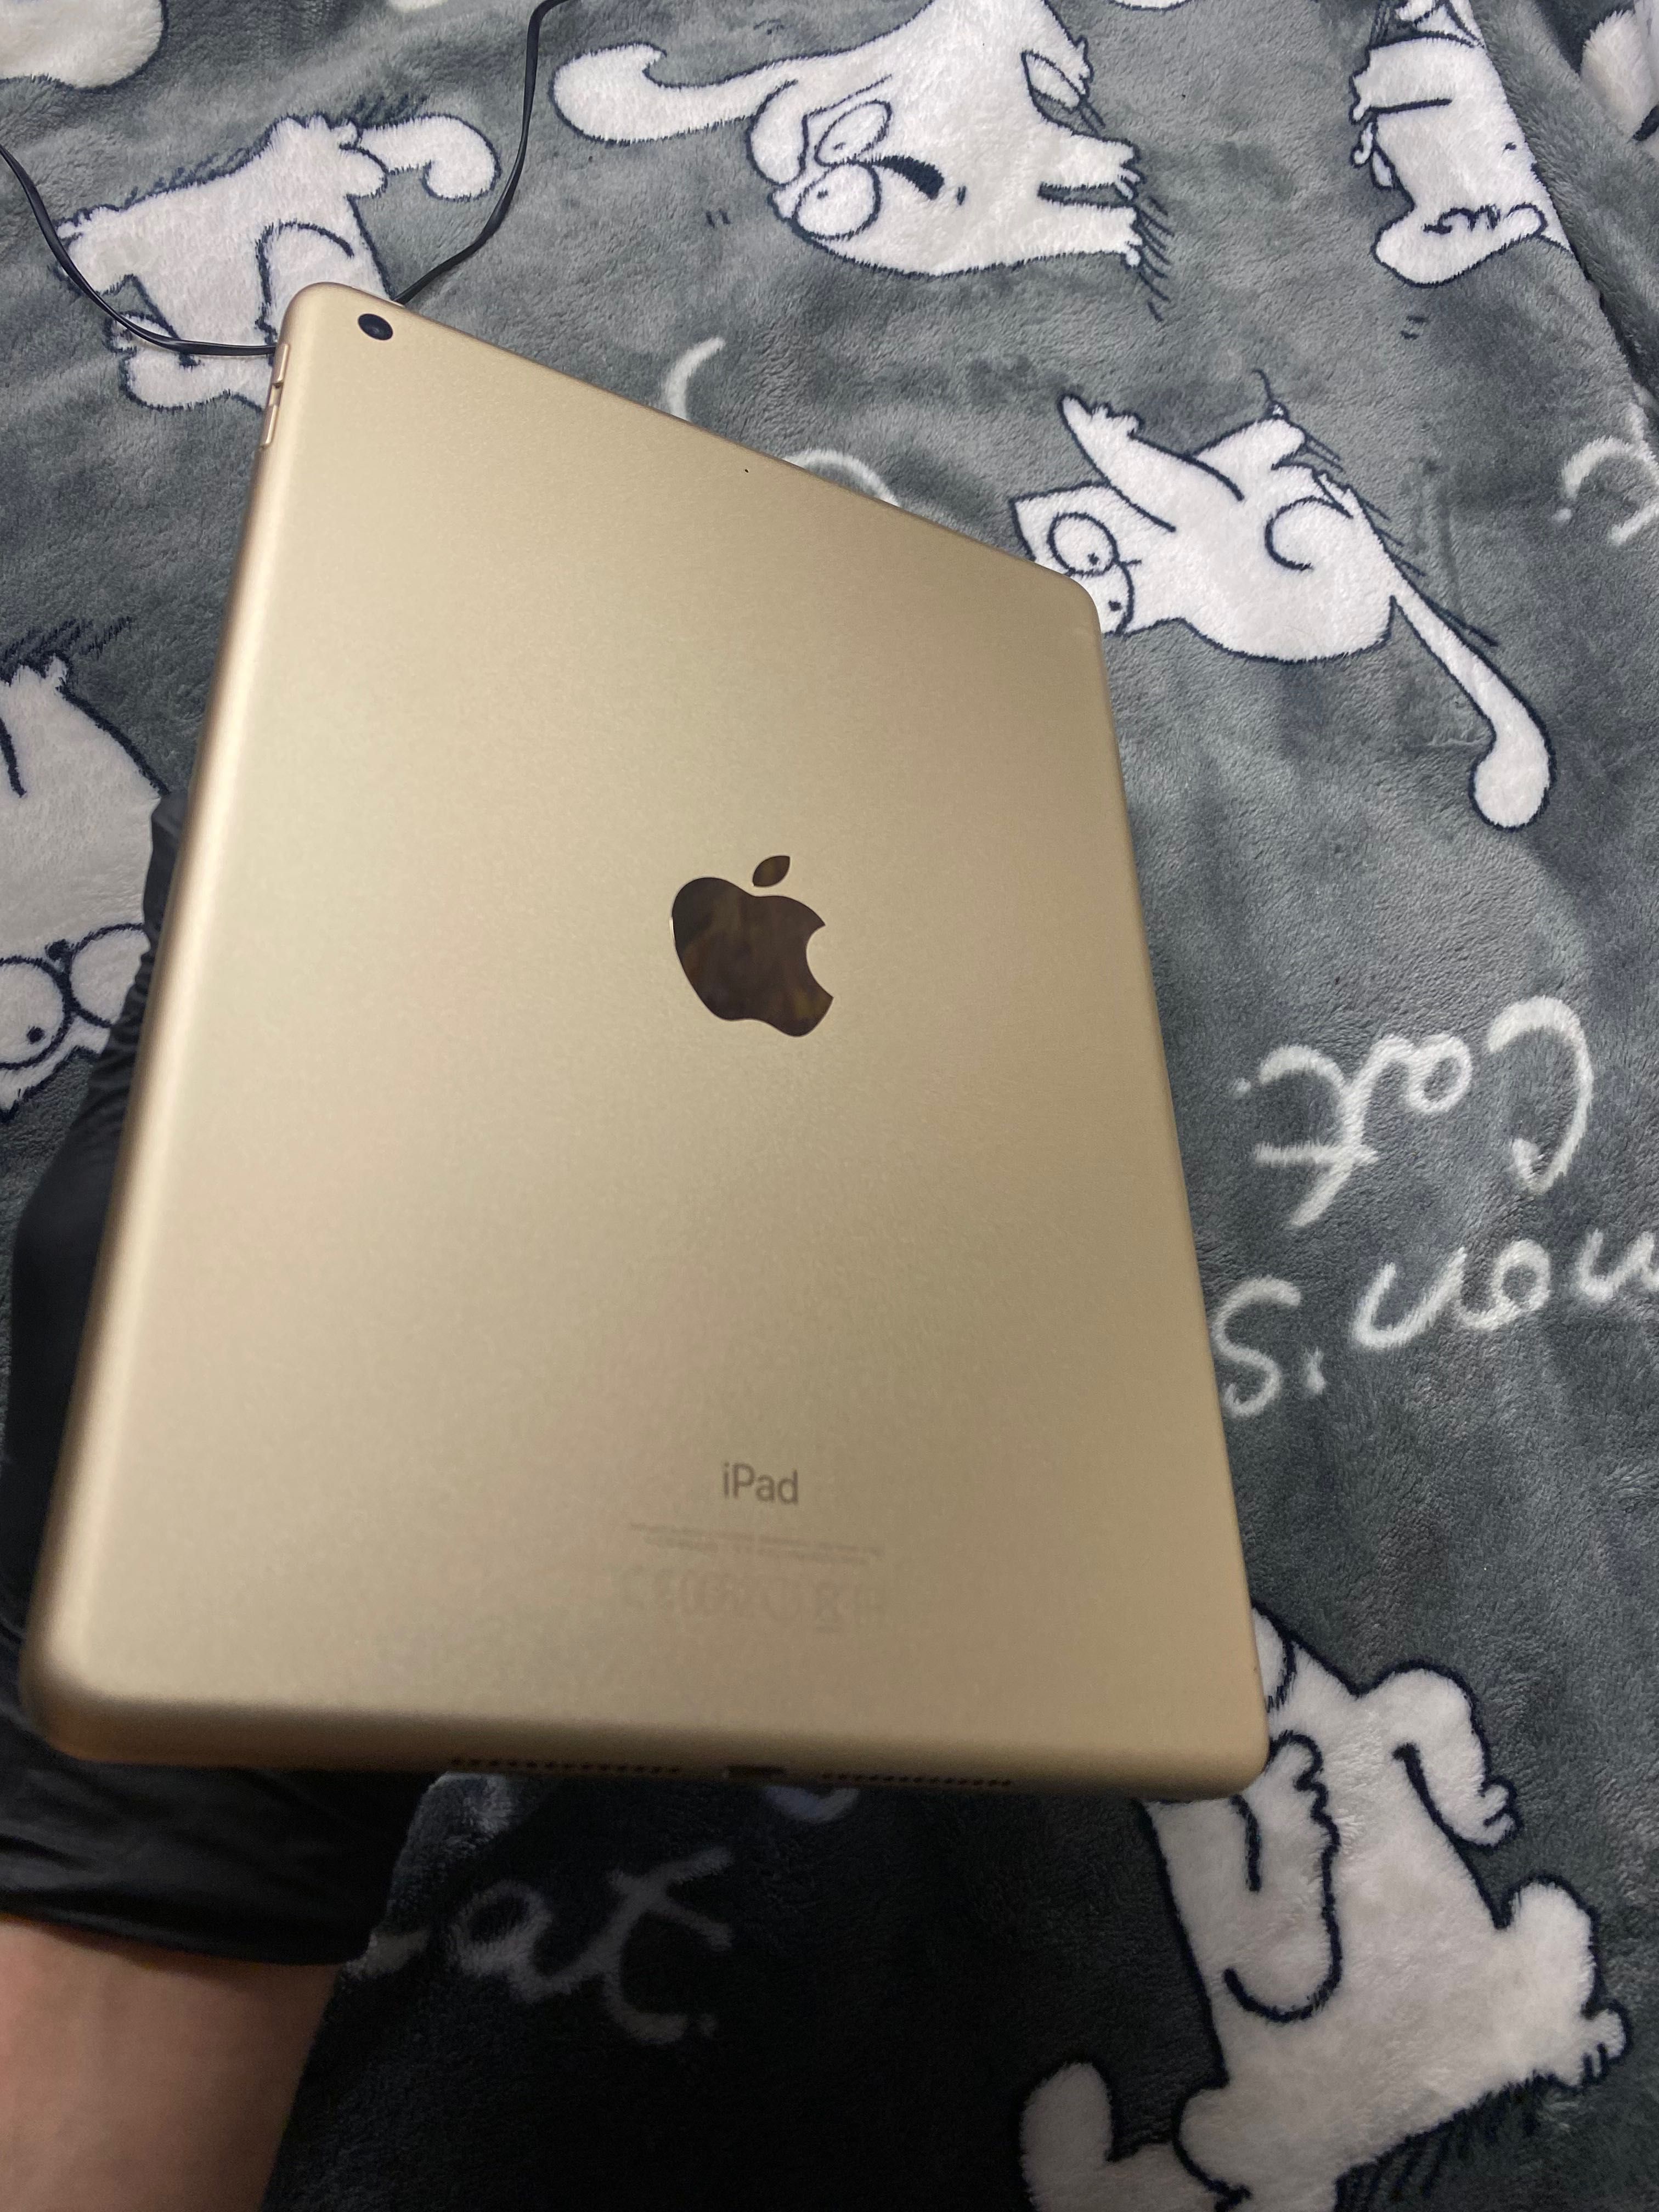 Планшет Apple iPad Gold  як новий, для дітей ідеально.